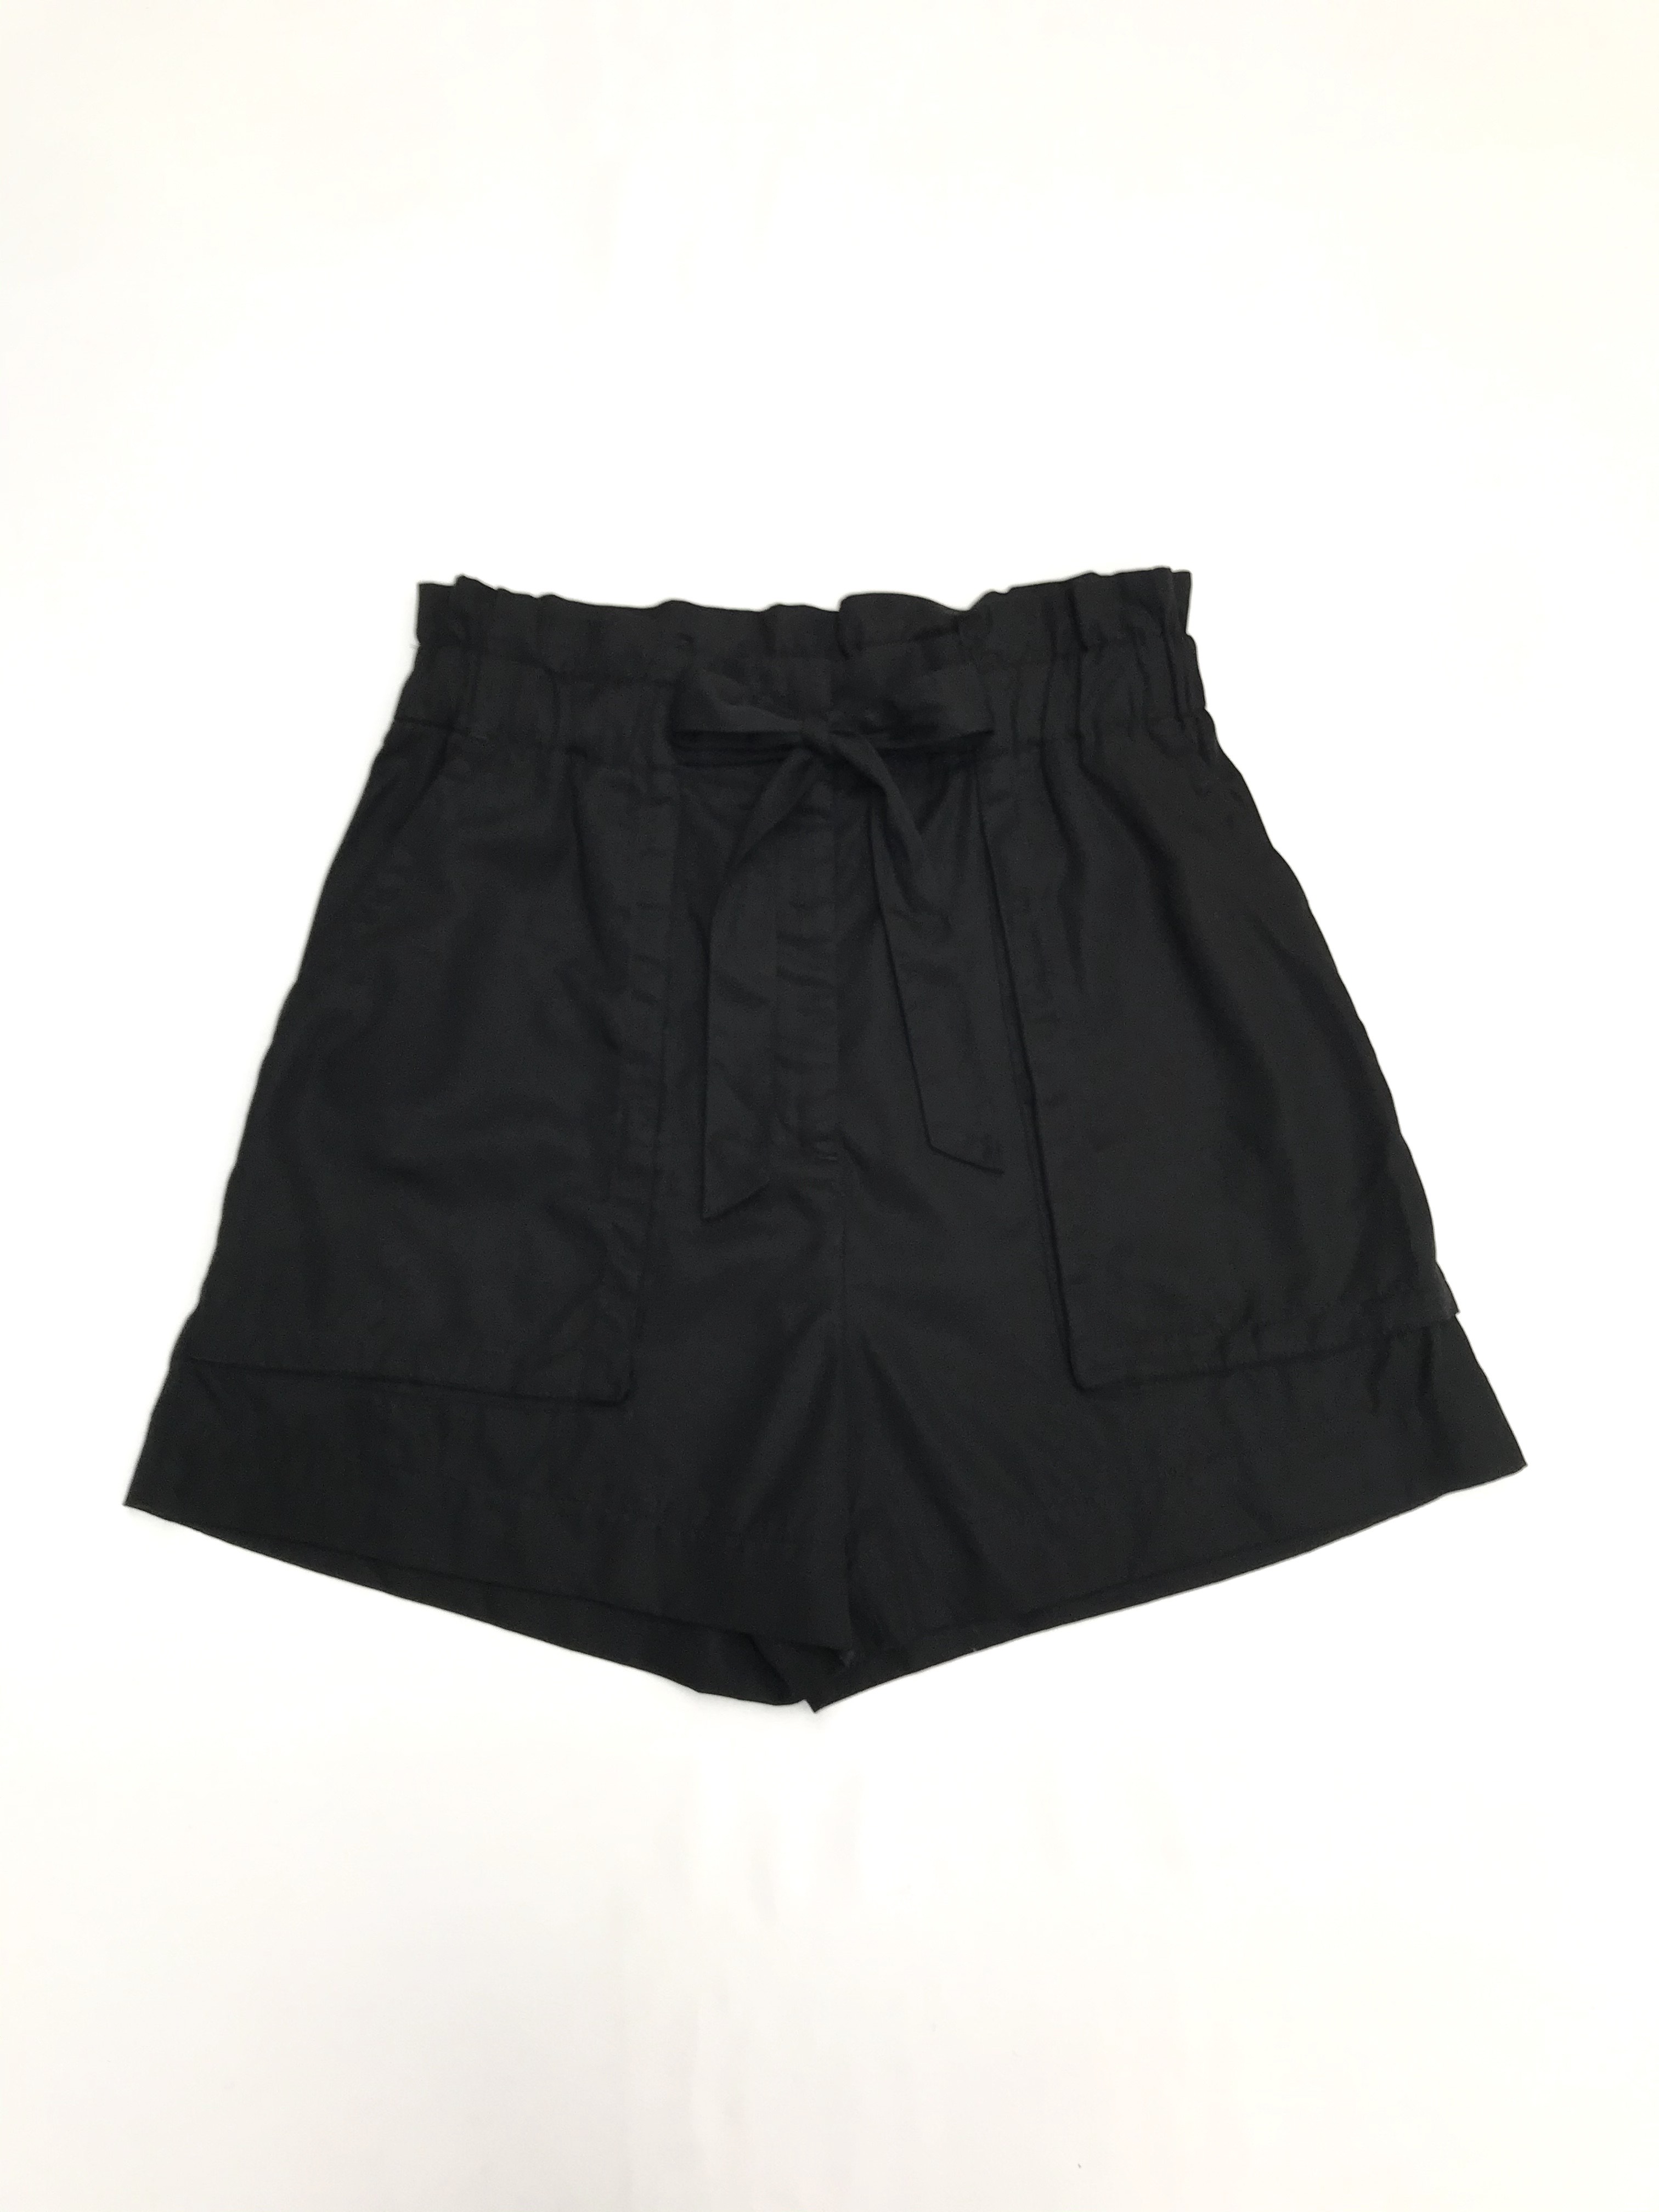 Short H&M negro 100% lyocell, a la cintura corte paper bag, elástico en la cintura, lazo y bolsillos delanteros. Precio original S/ 130
Talla S (8)